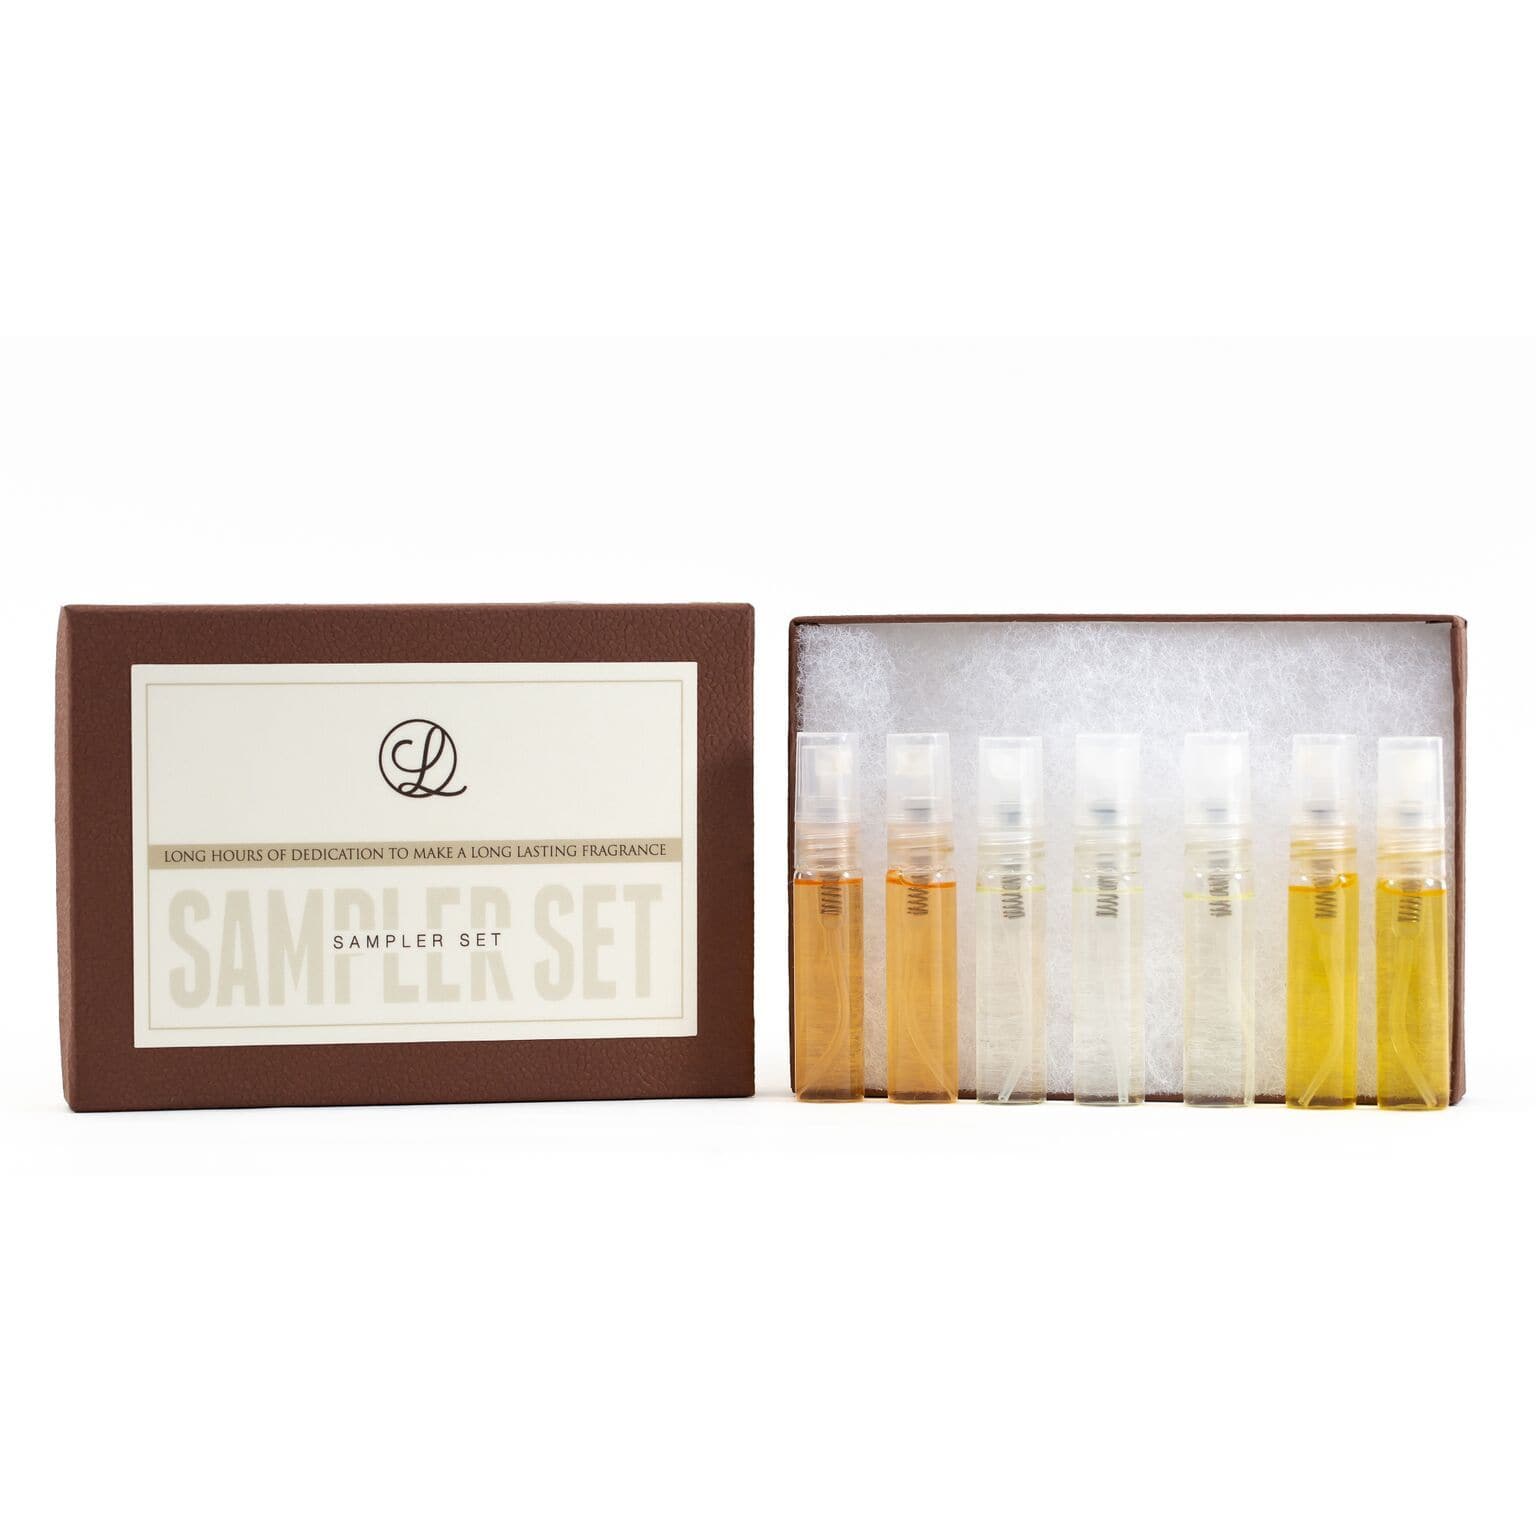 The Sampler Set (Choose 7 unique fragrances!)